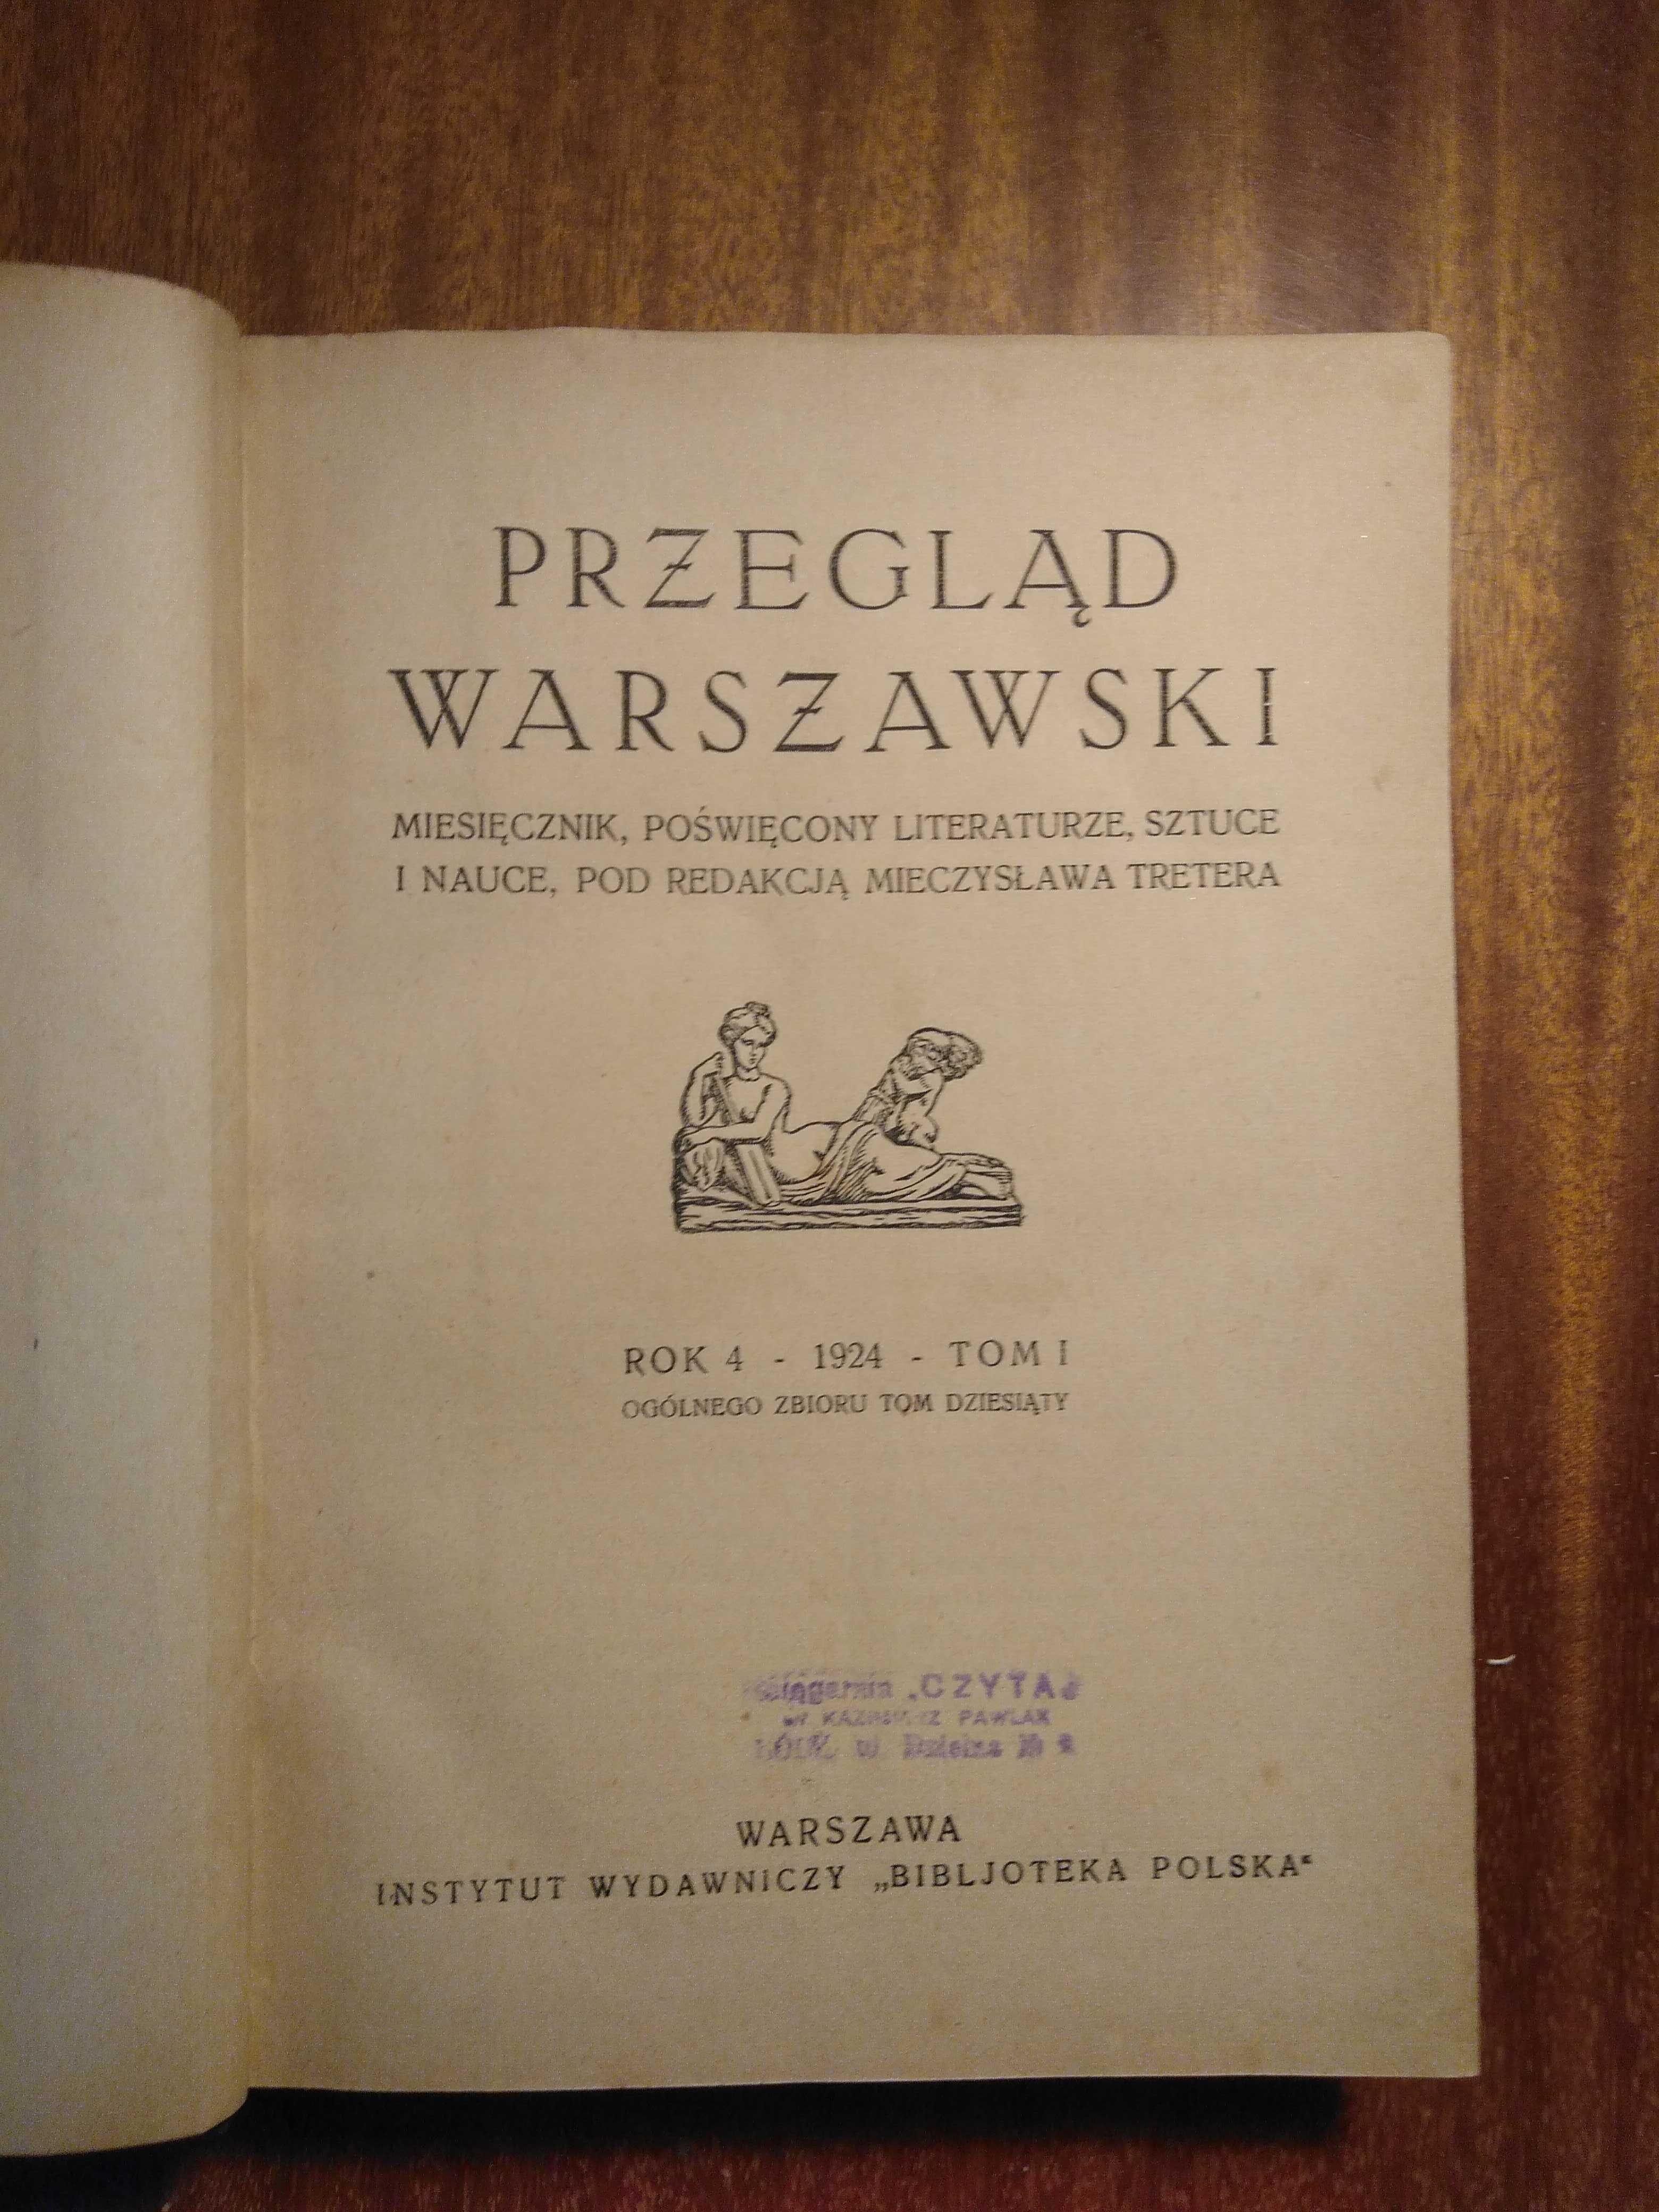 Przegląd Warszawski - Rok 4 - 1924 - Tom I